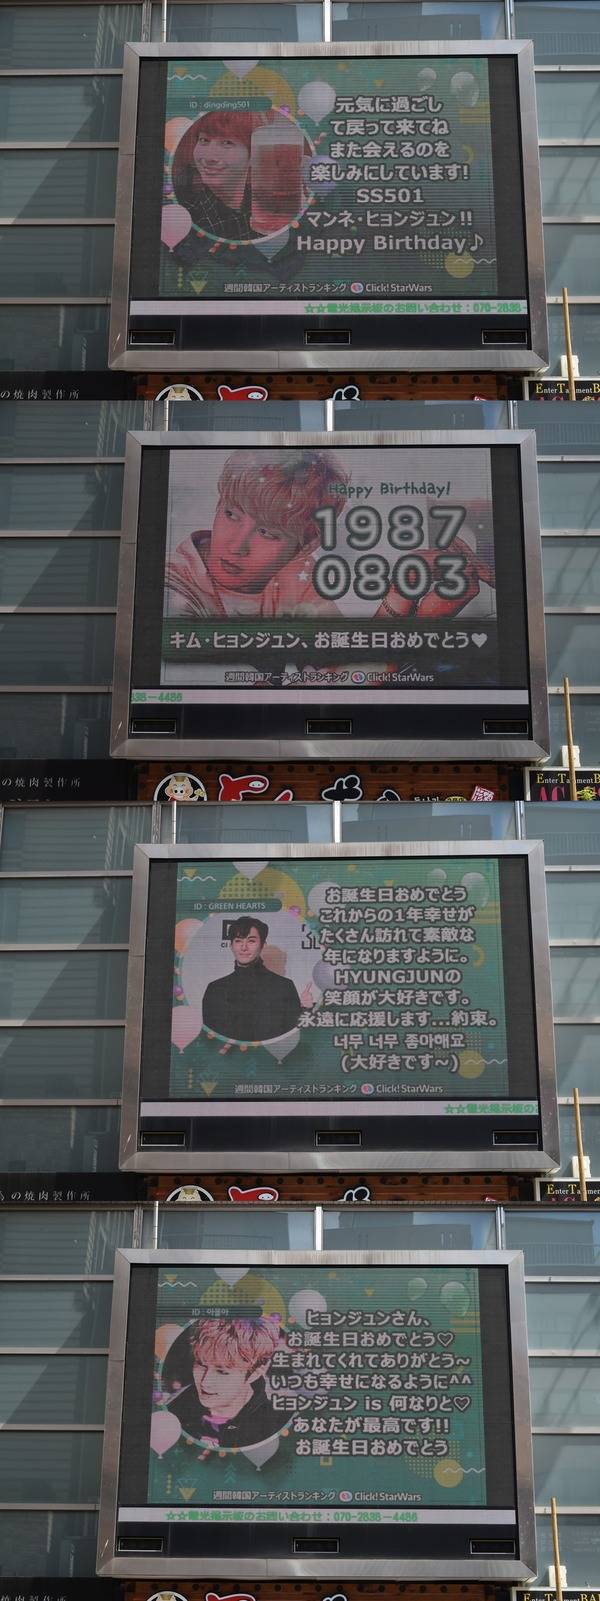 김형준, 생일 축하해 3일 일본 도쿄에 위치한 전광판에서 그룹 더블에스301 김형준의 생일을 축하하는 영상이 상영 중이다. /클릭스타워즈